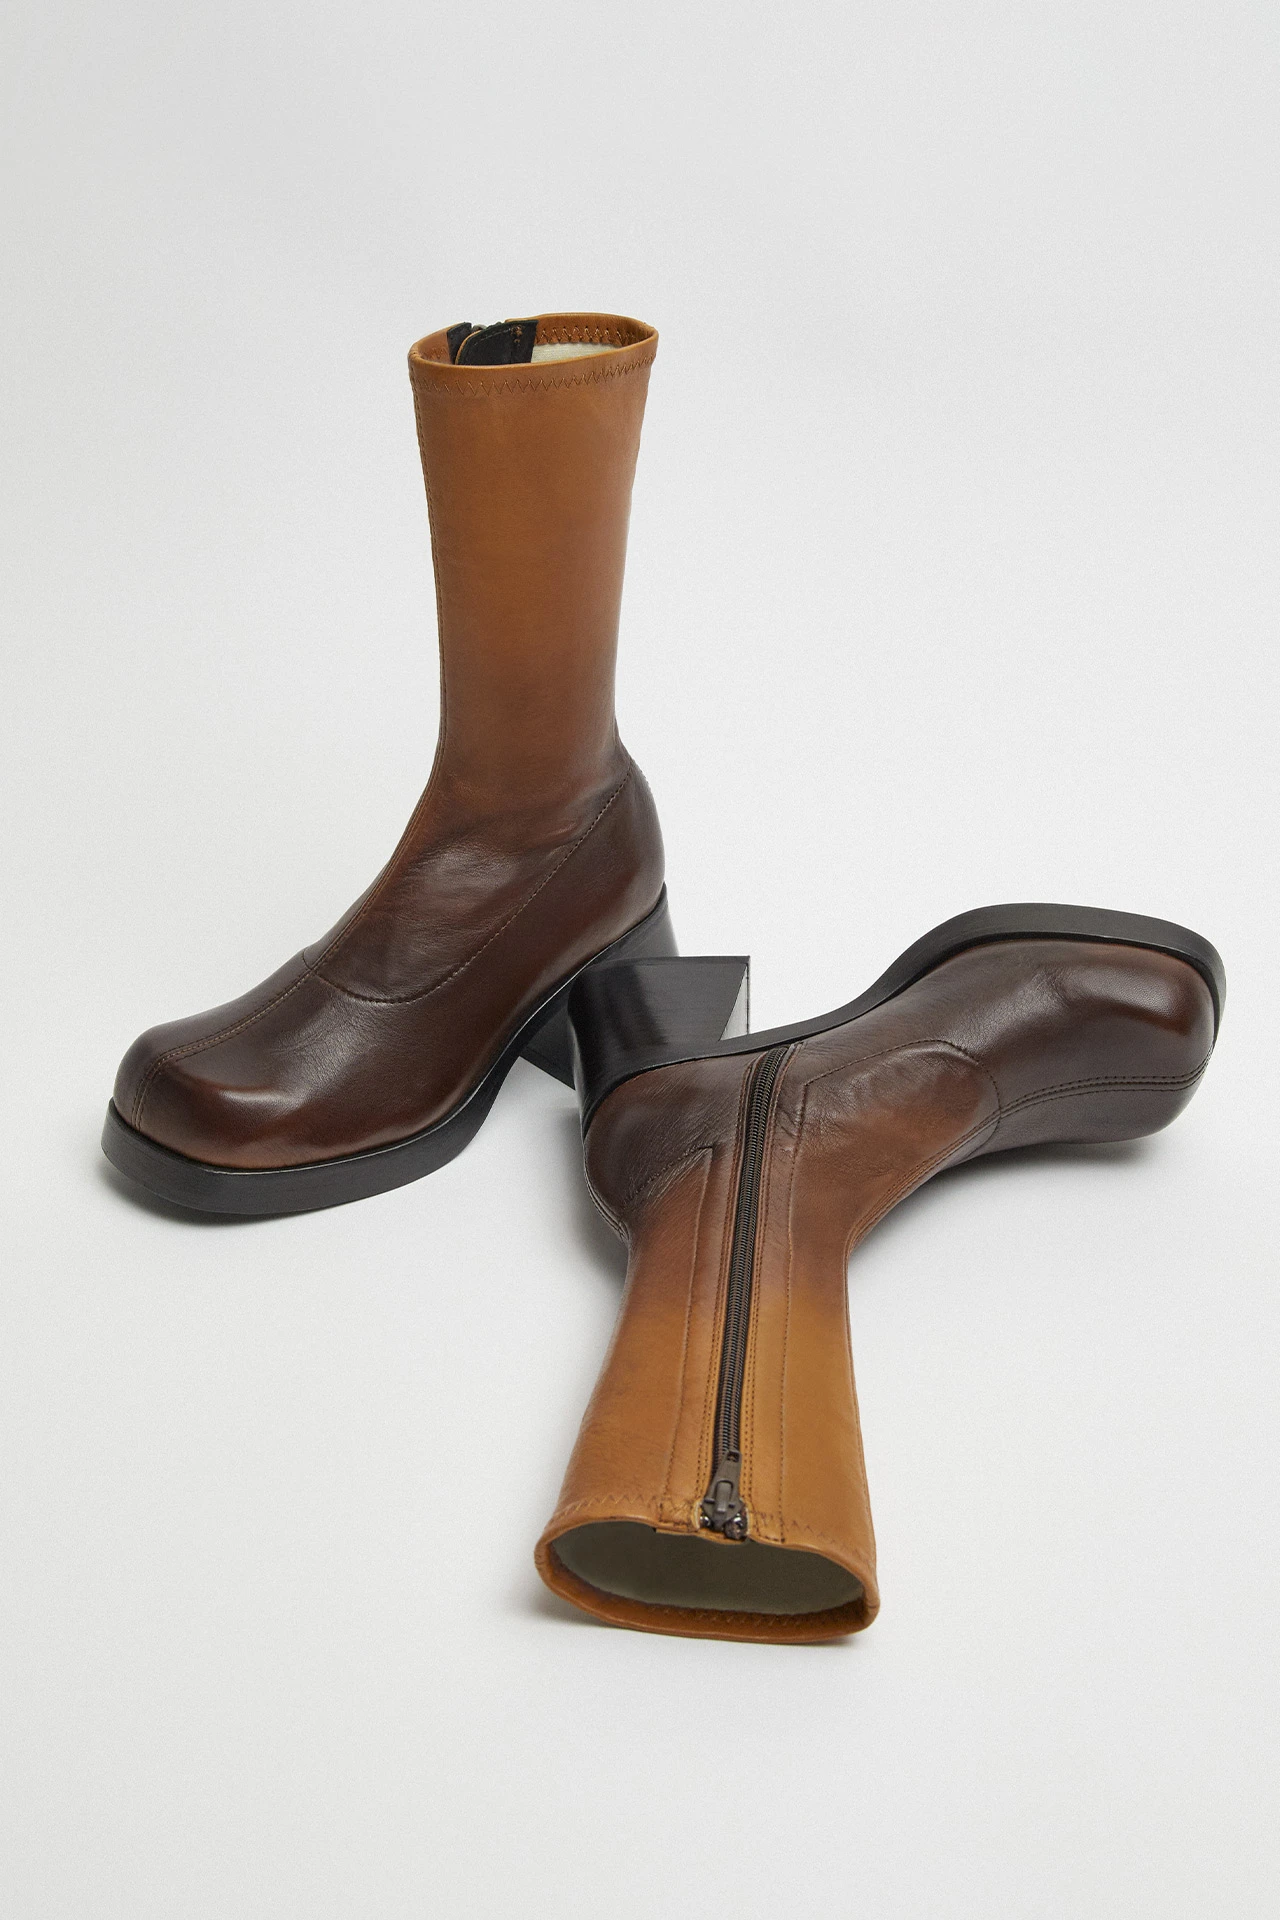 Miista-elke-brown-degrade-boots-02